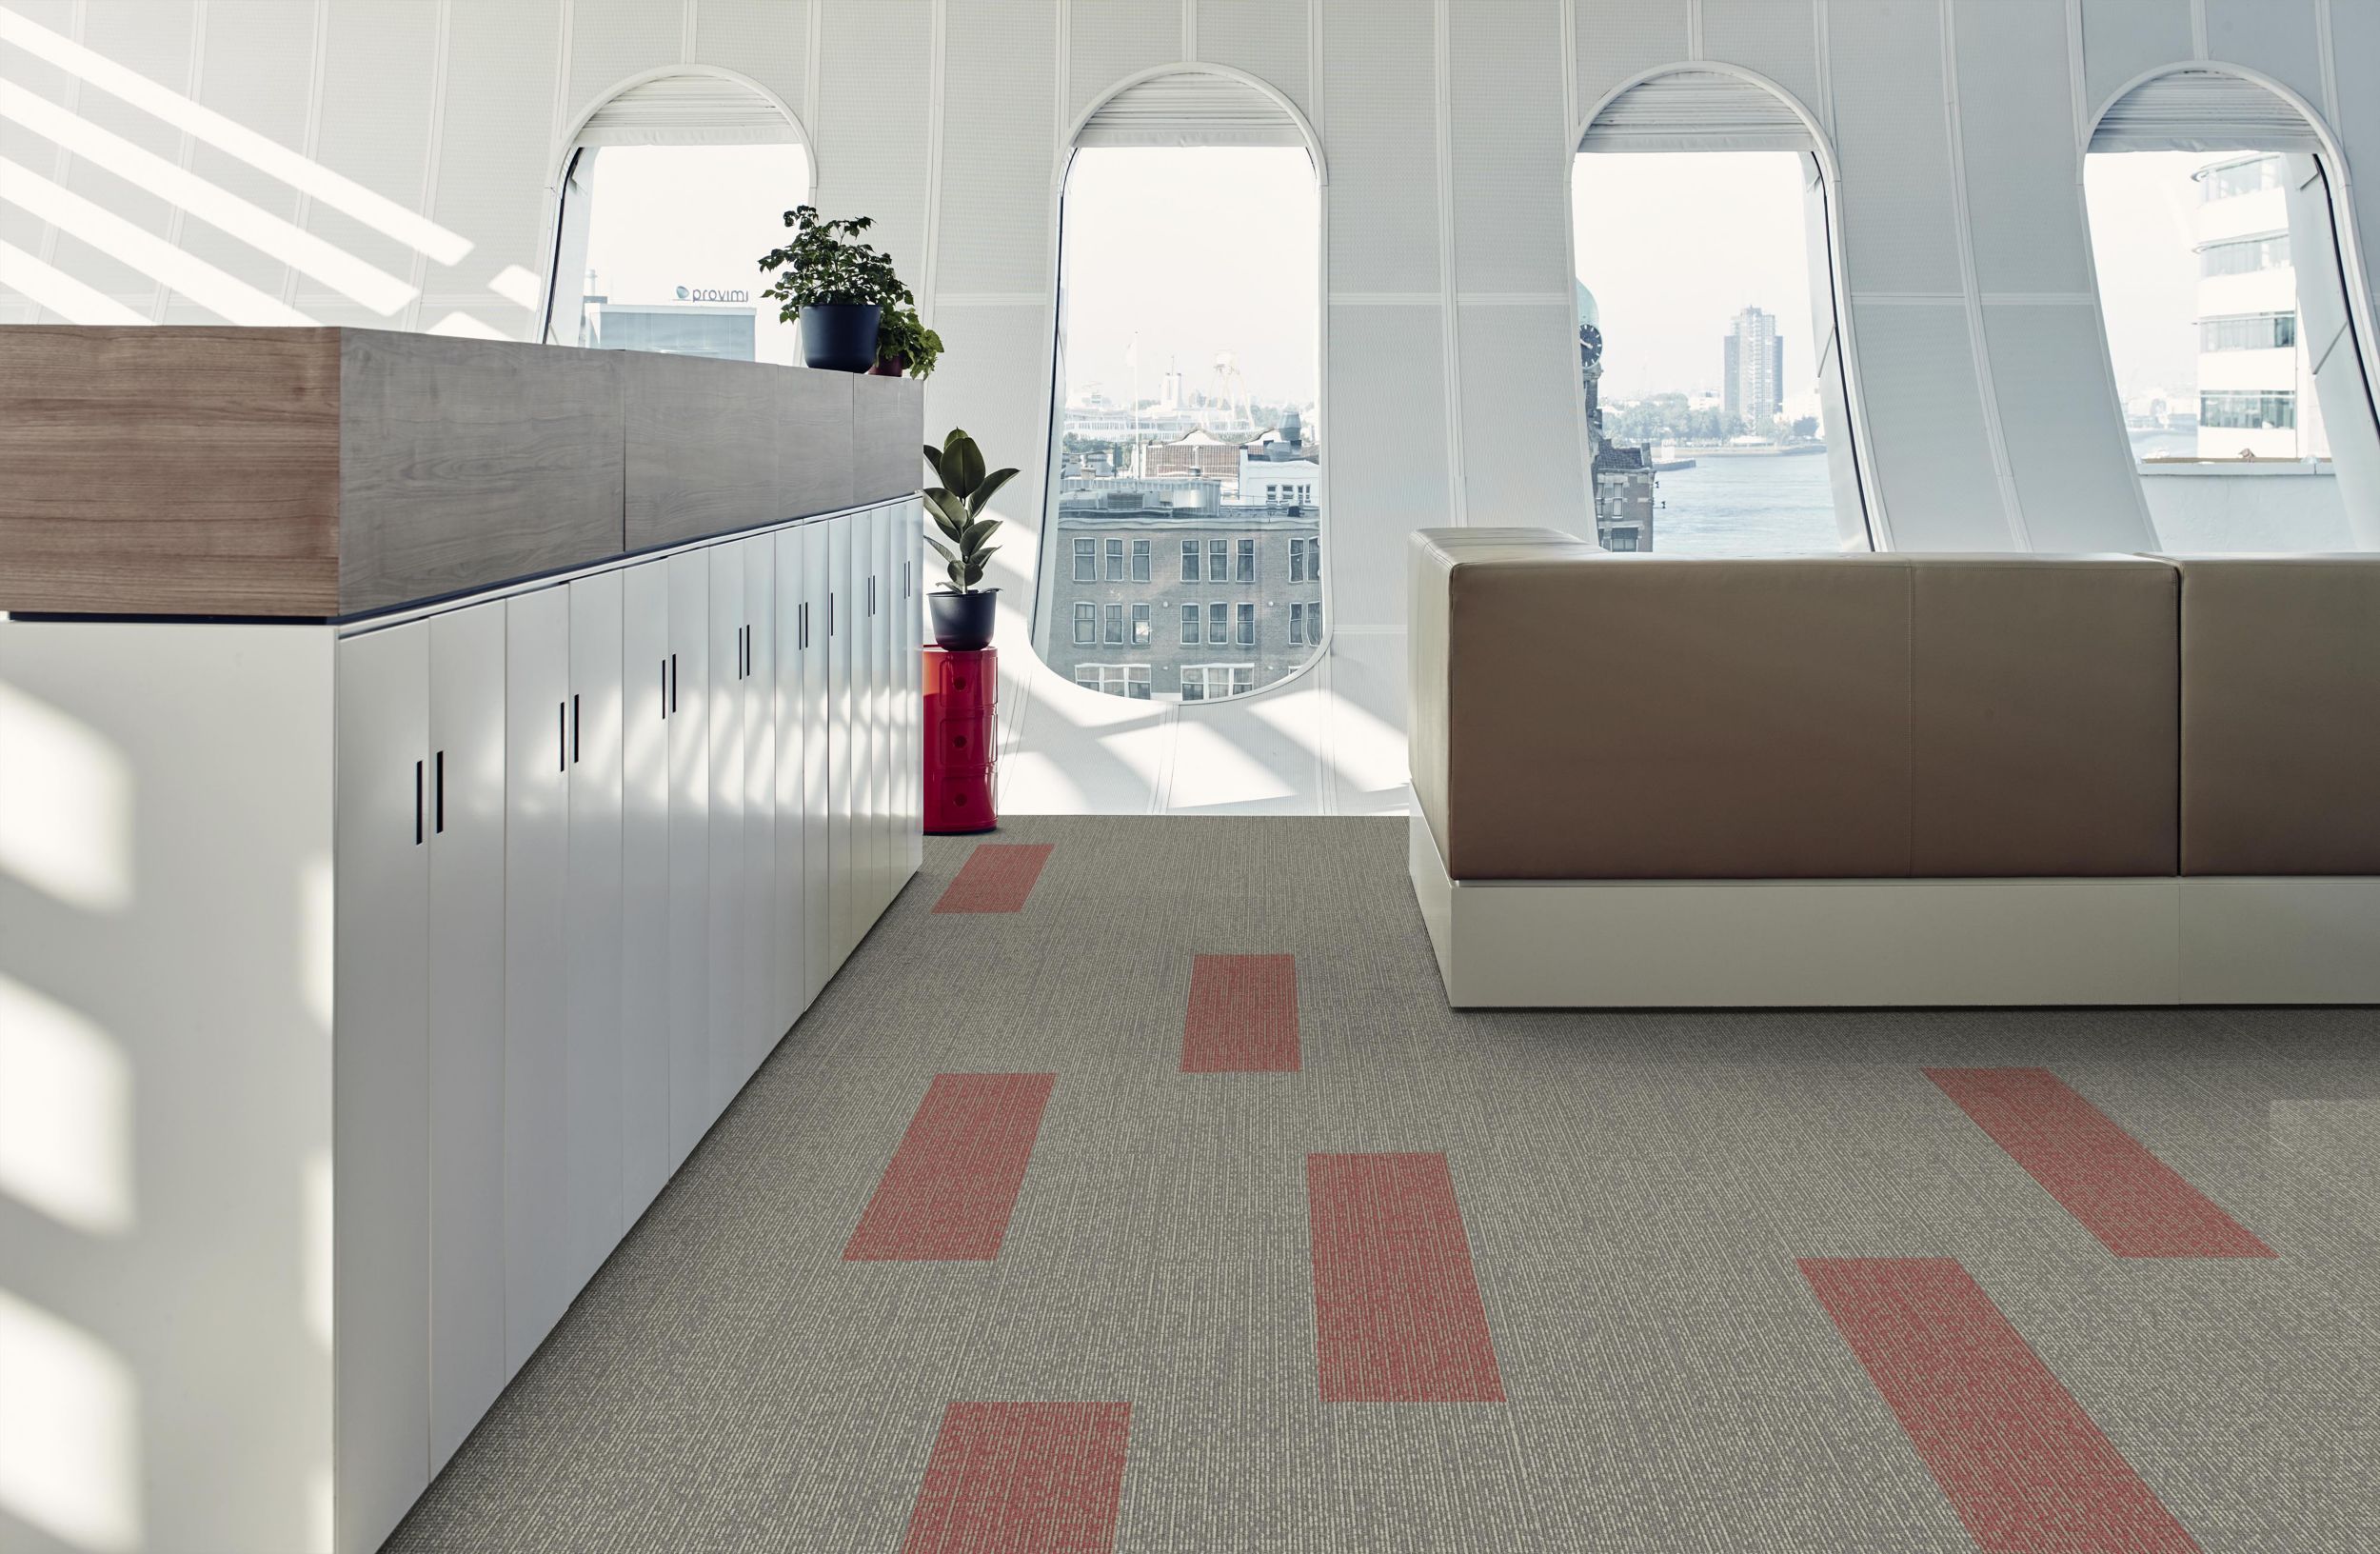 Interface Sashiko Stitch plank carpet tile in workspace with cubicles número de imagen 9